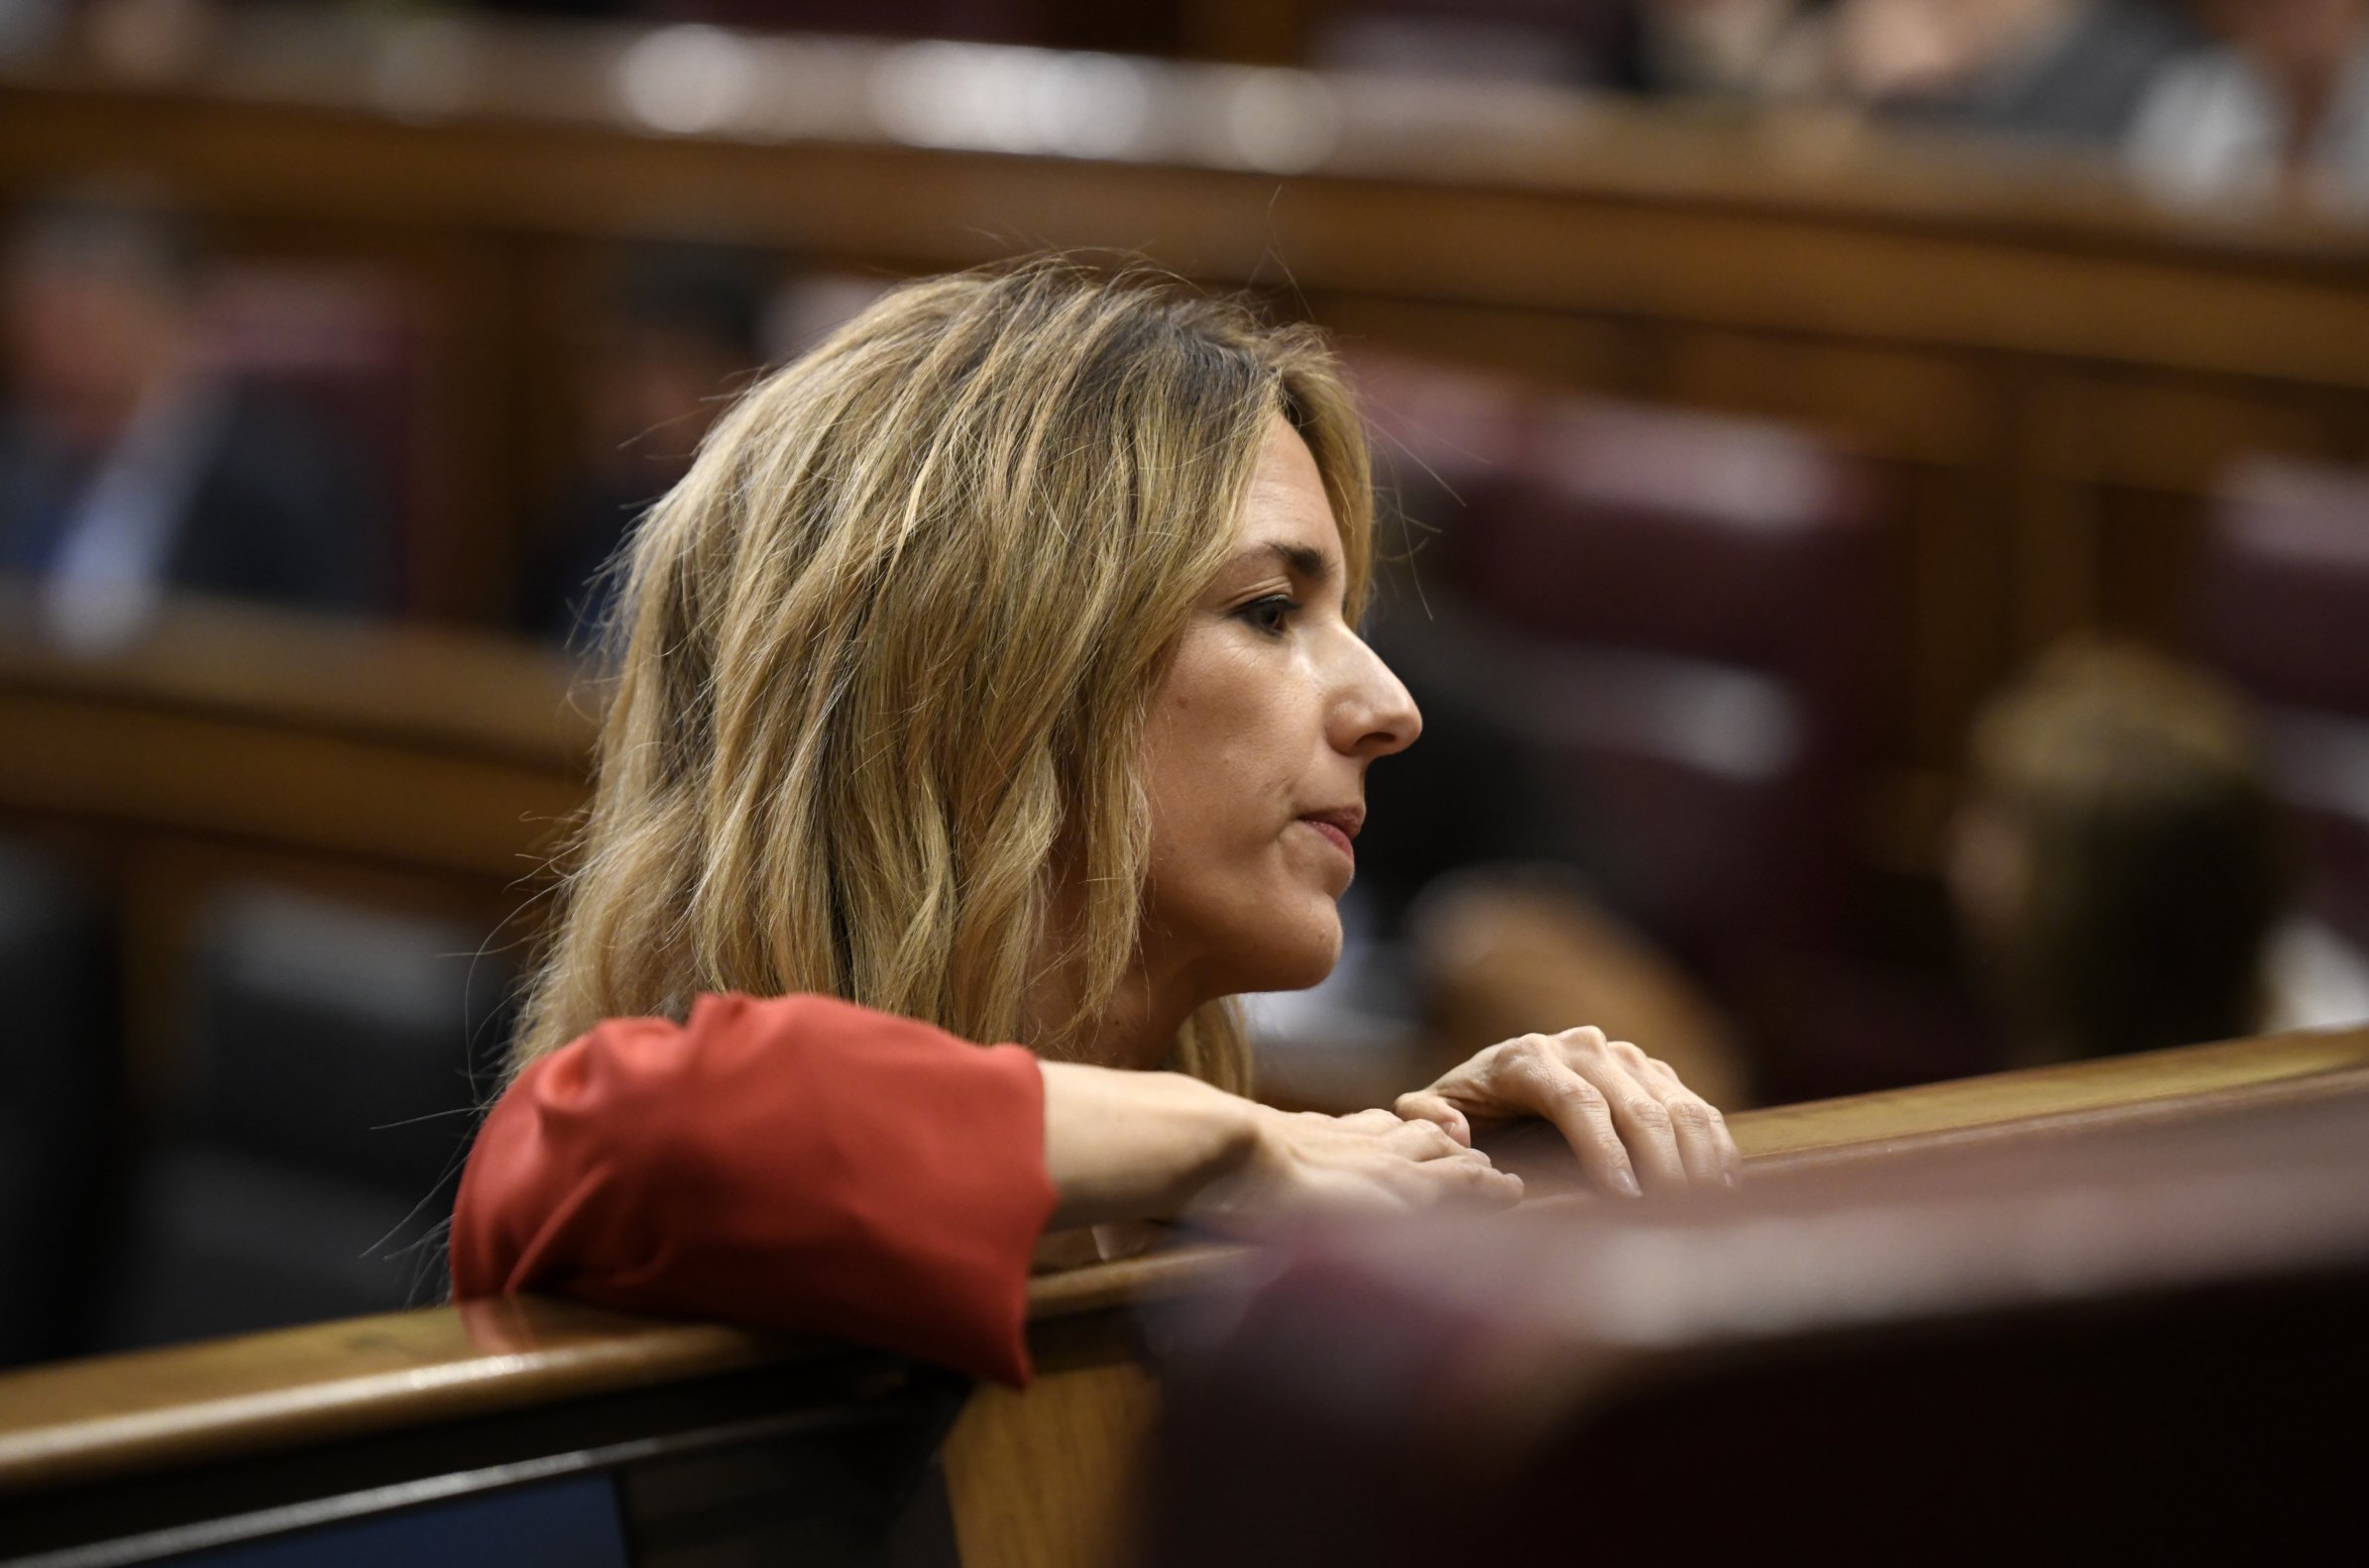 Un presentador catalán de La Sexta humilla a Cayetana: "me estoy forrando"